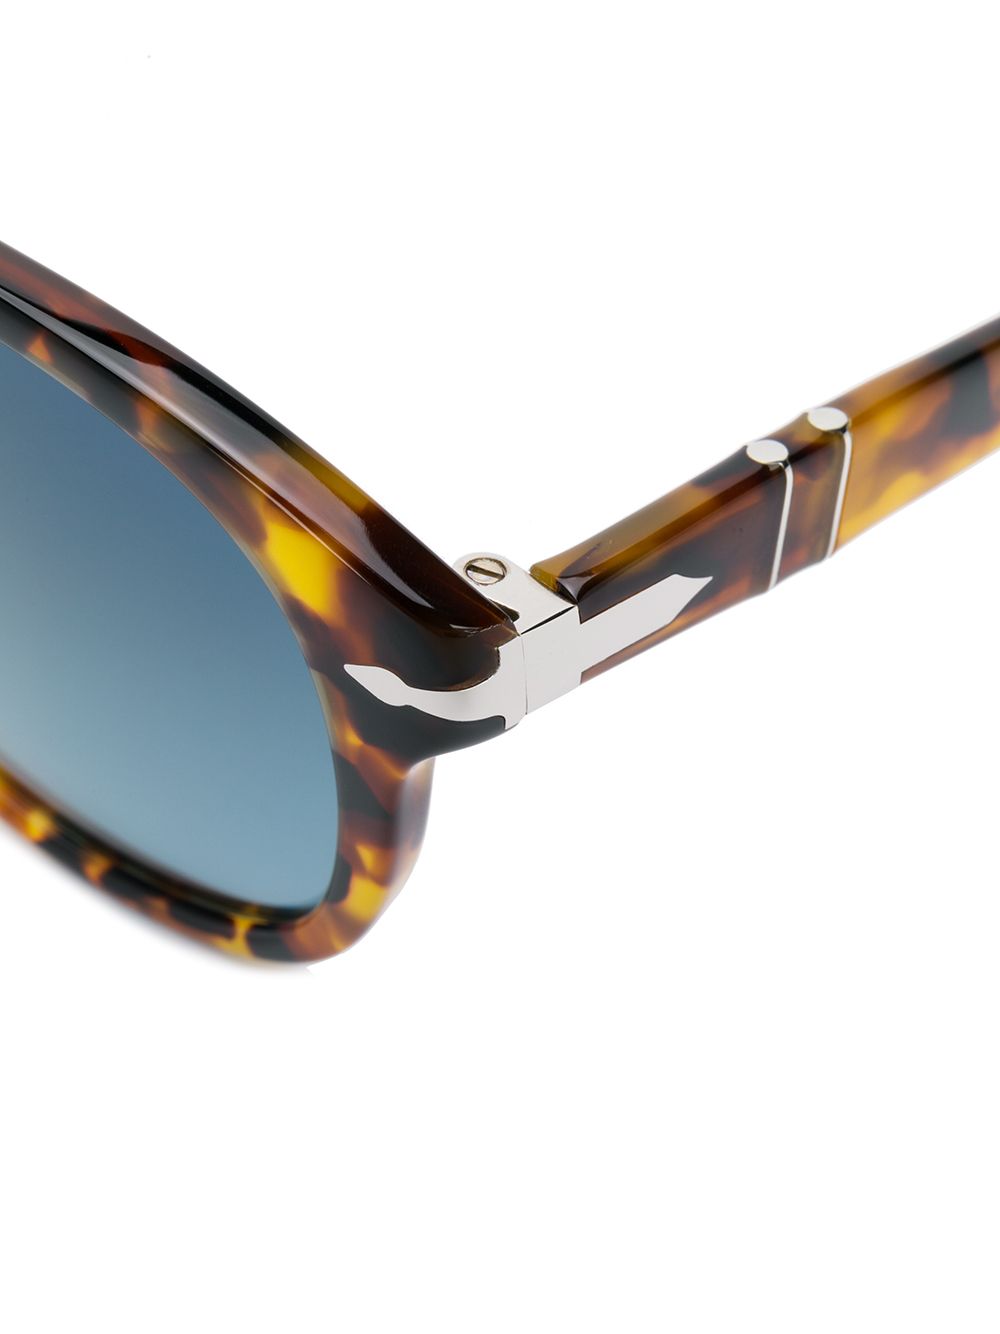 фото Persol солнцезащитные очки в оправе черепаховой расцветки